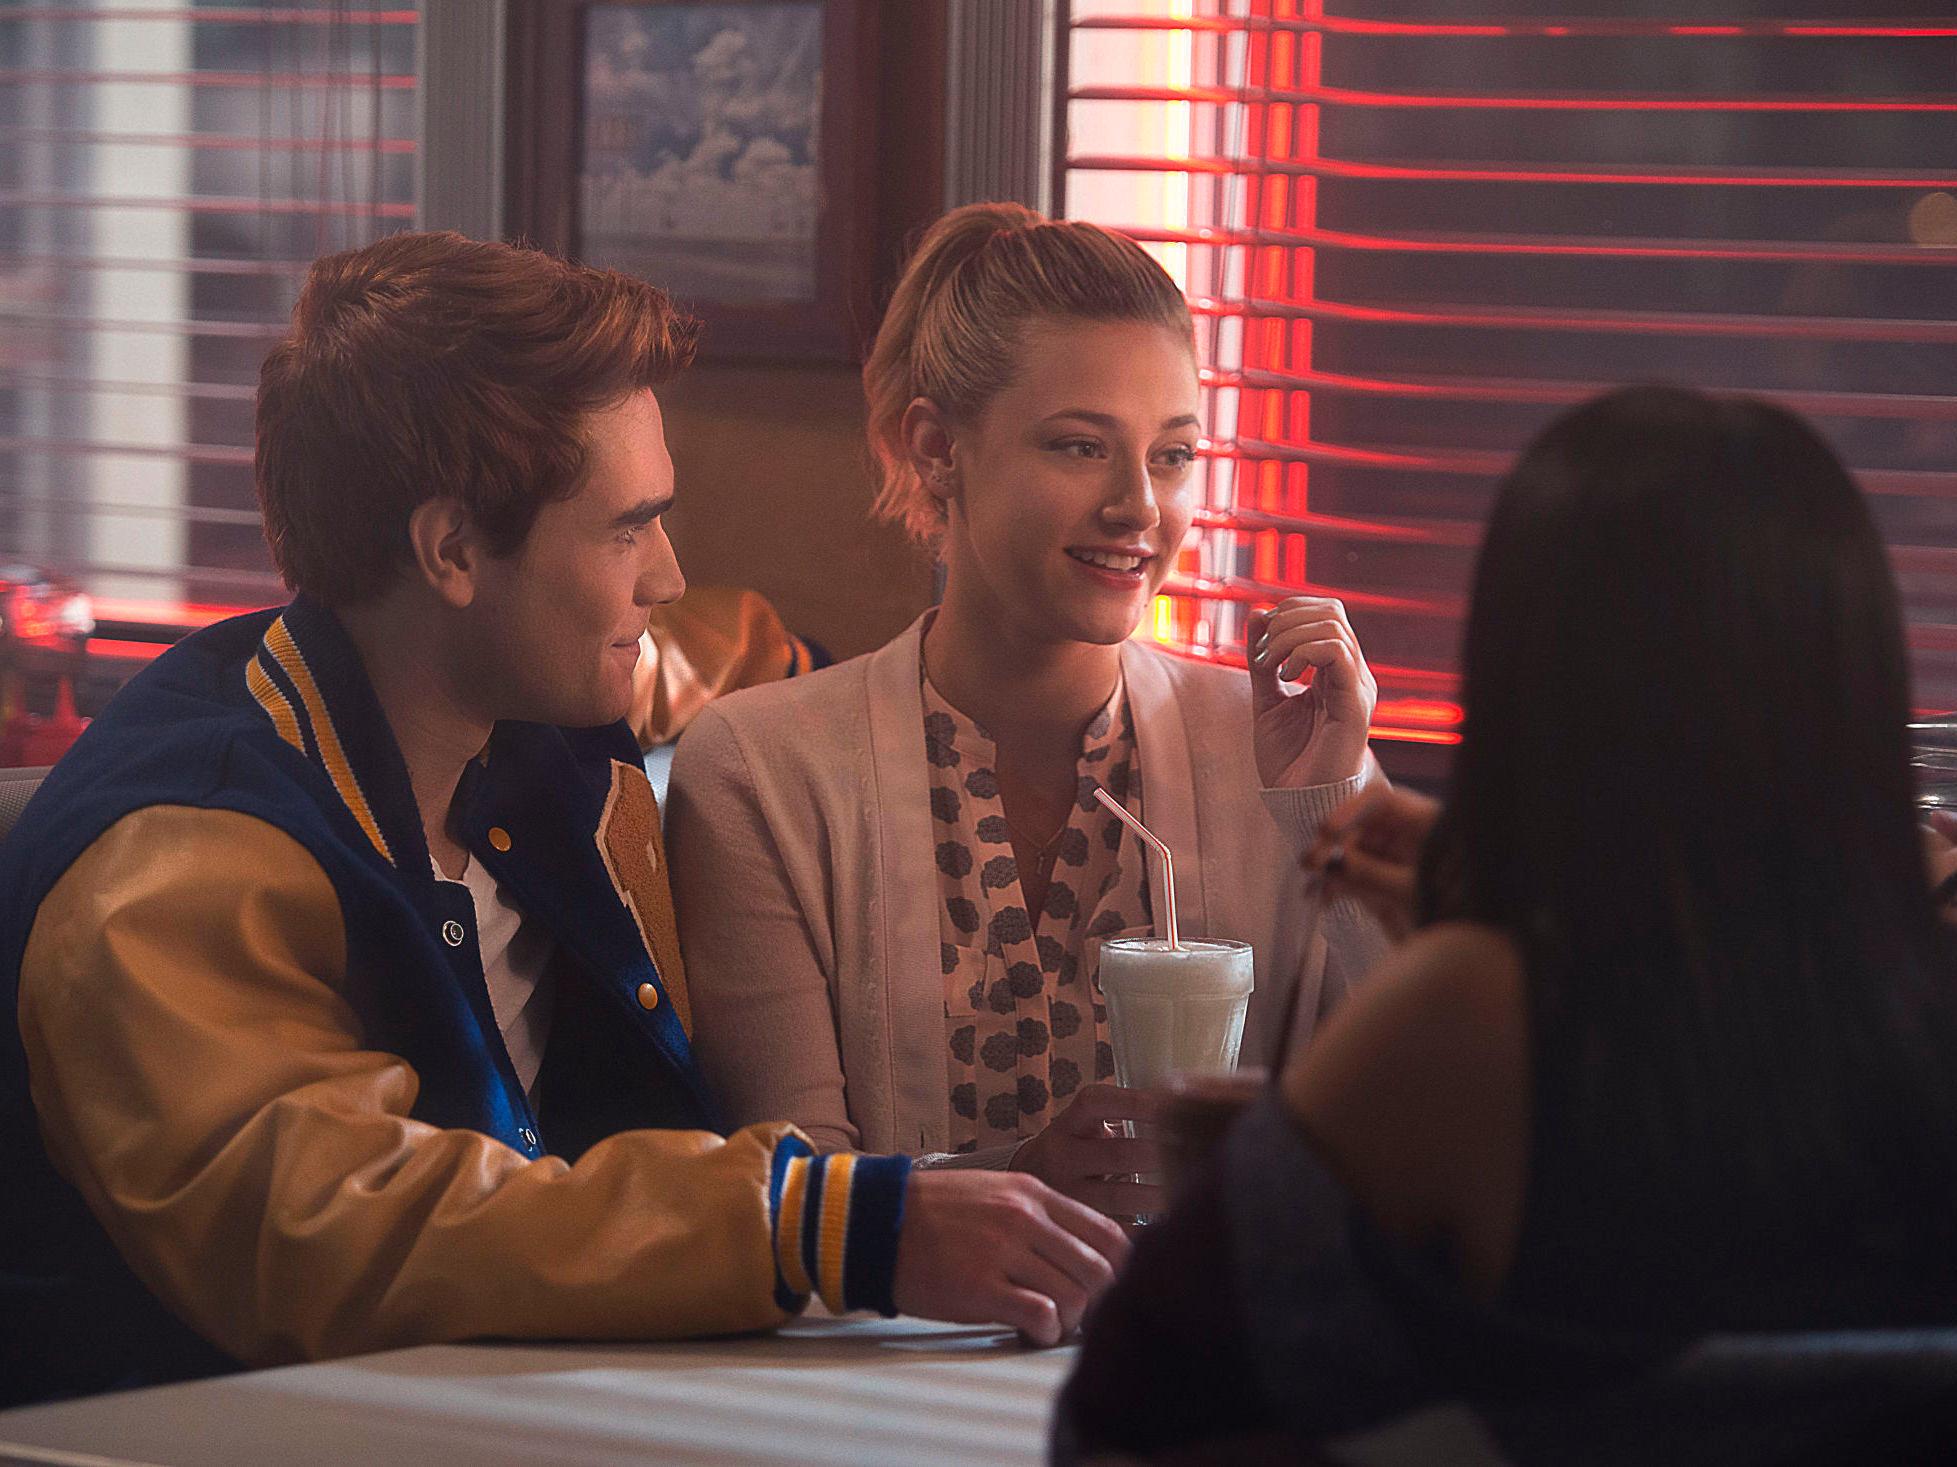 DINER-KLASSIKER: Archie og Betty i dyp milkshake-samtale. Foto: Netflix